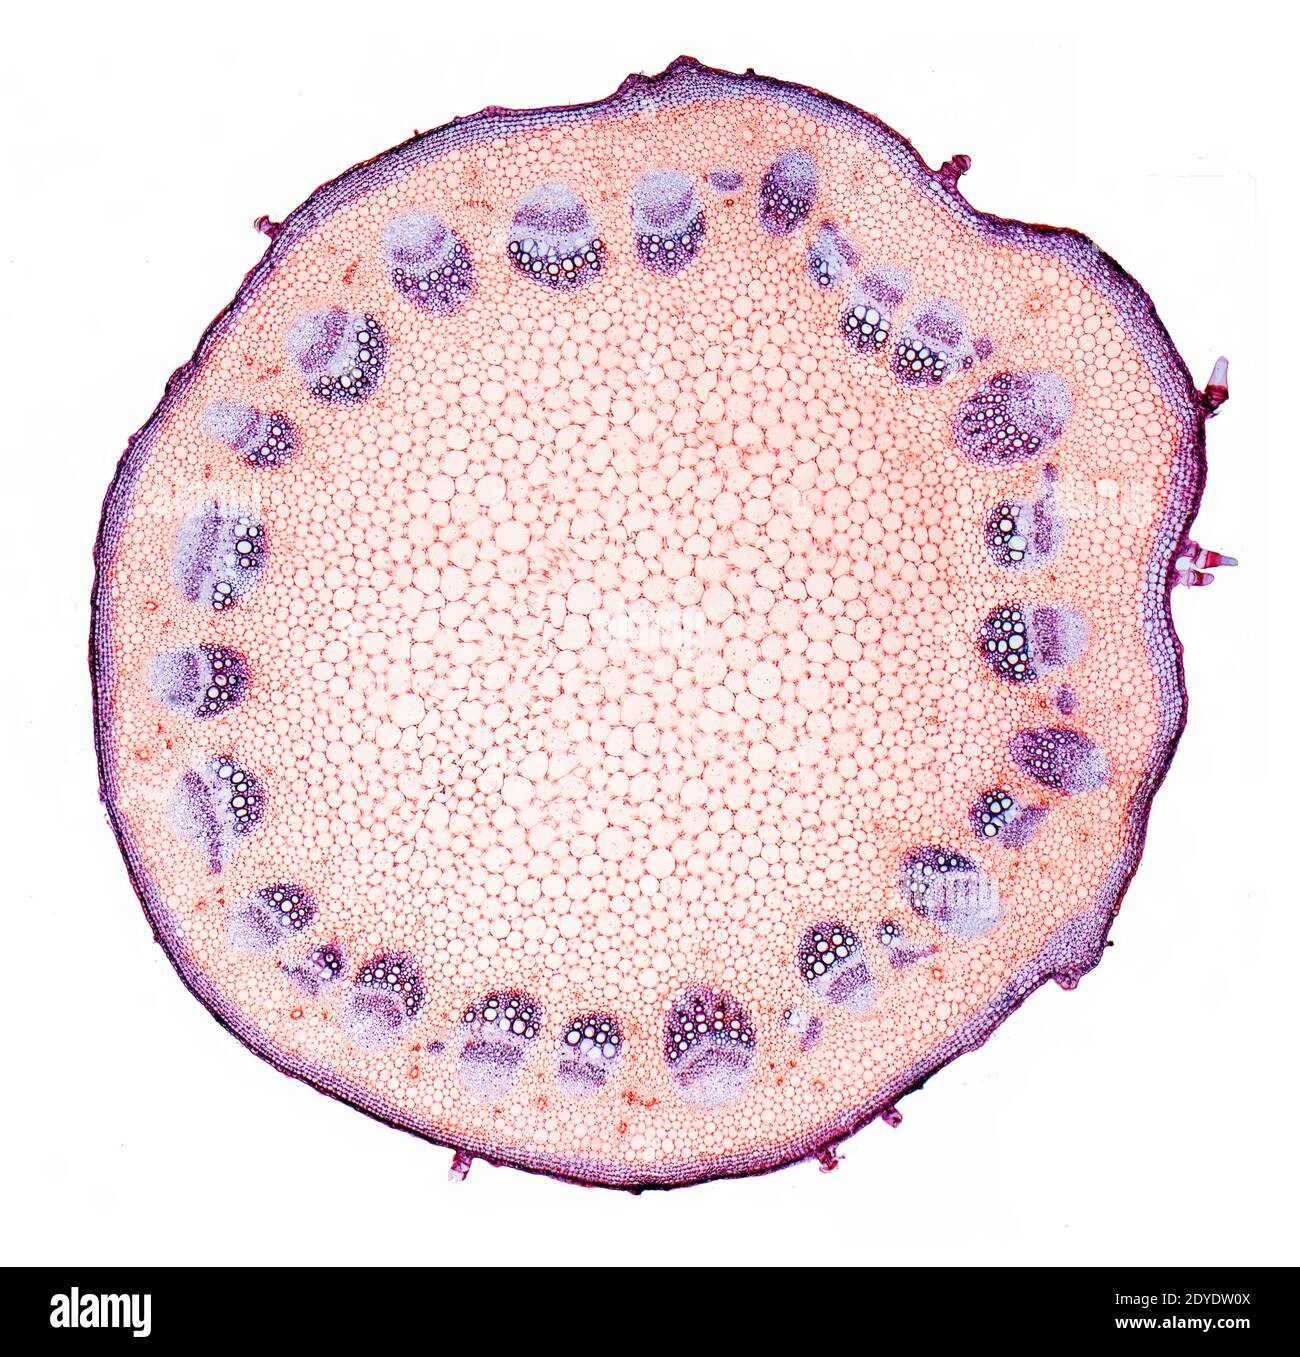 Helianthus-Stamm. Leichte Mikrographie (LM) des Stammes einer mehrjährigen Sonnenblume (Helianthus sp.). Stockfoto